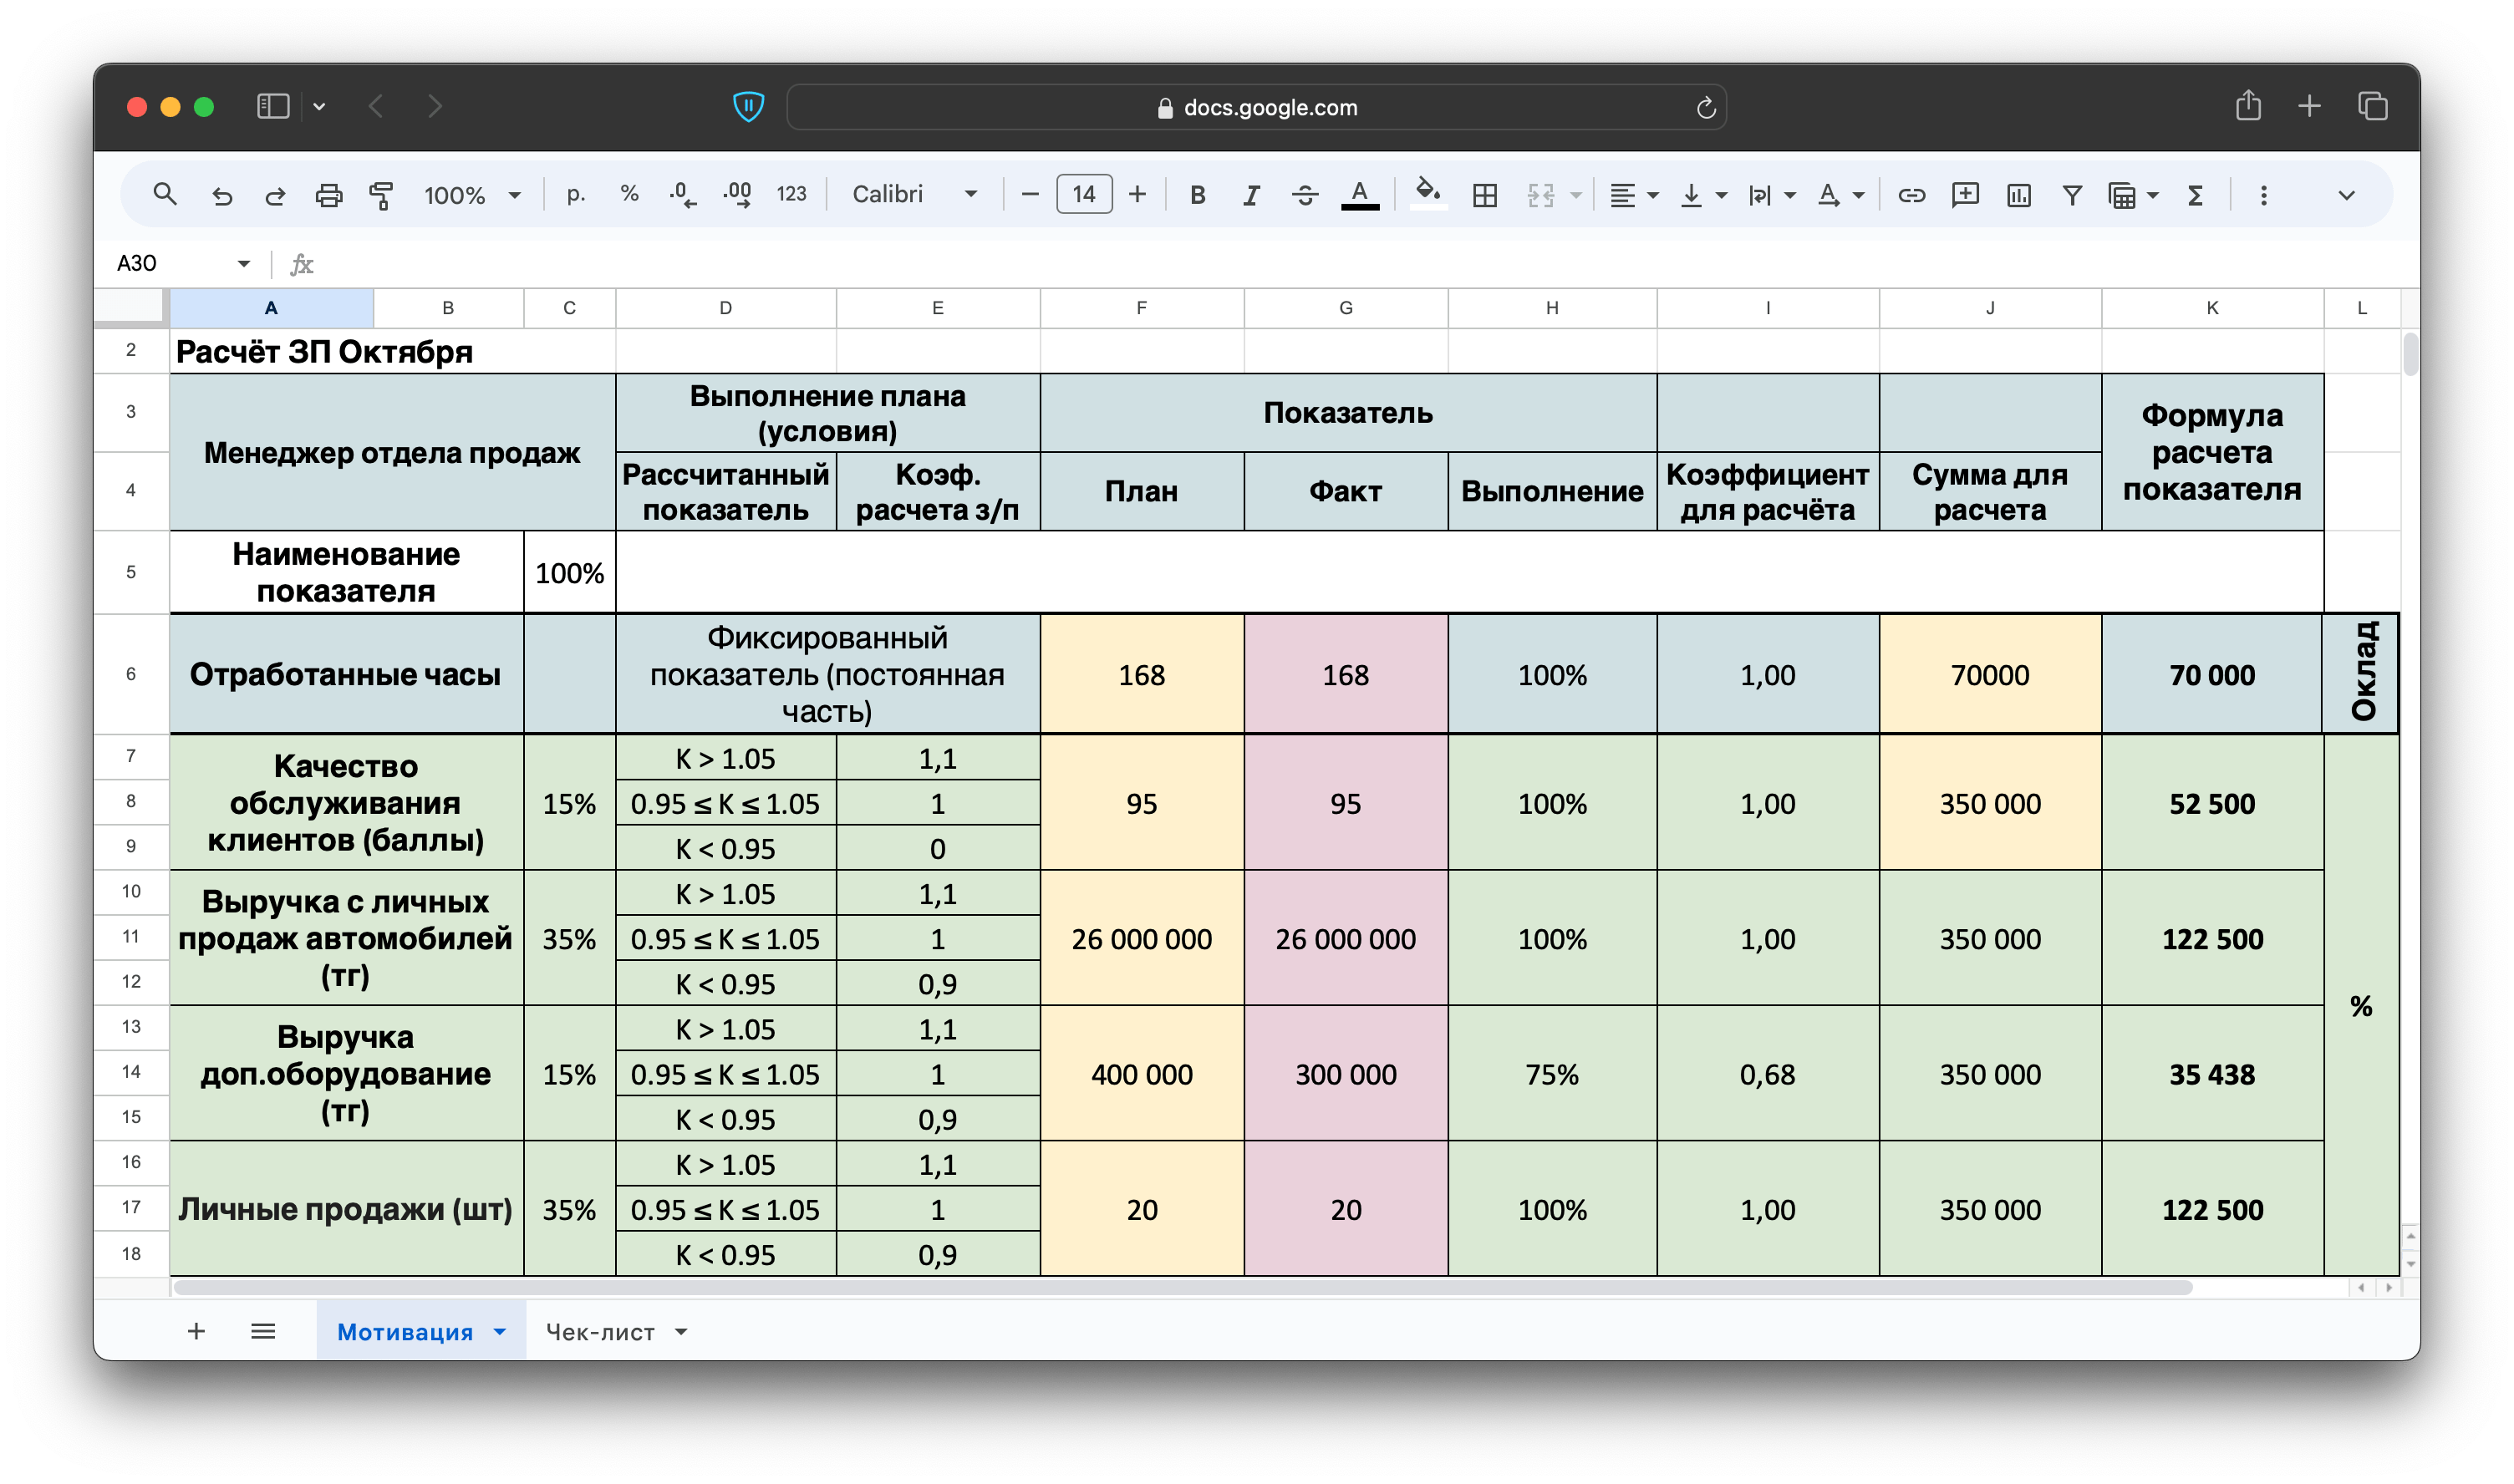 Визуализация бонусов и премий продажников: пример в таблице